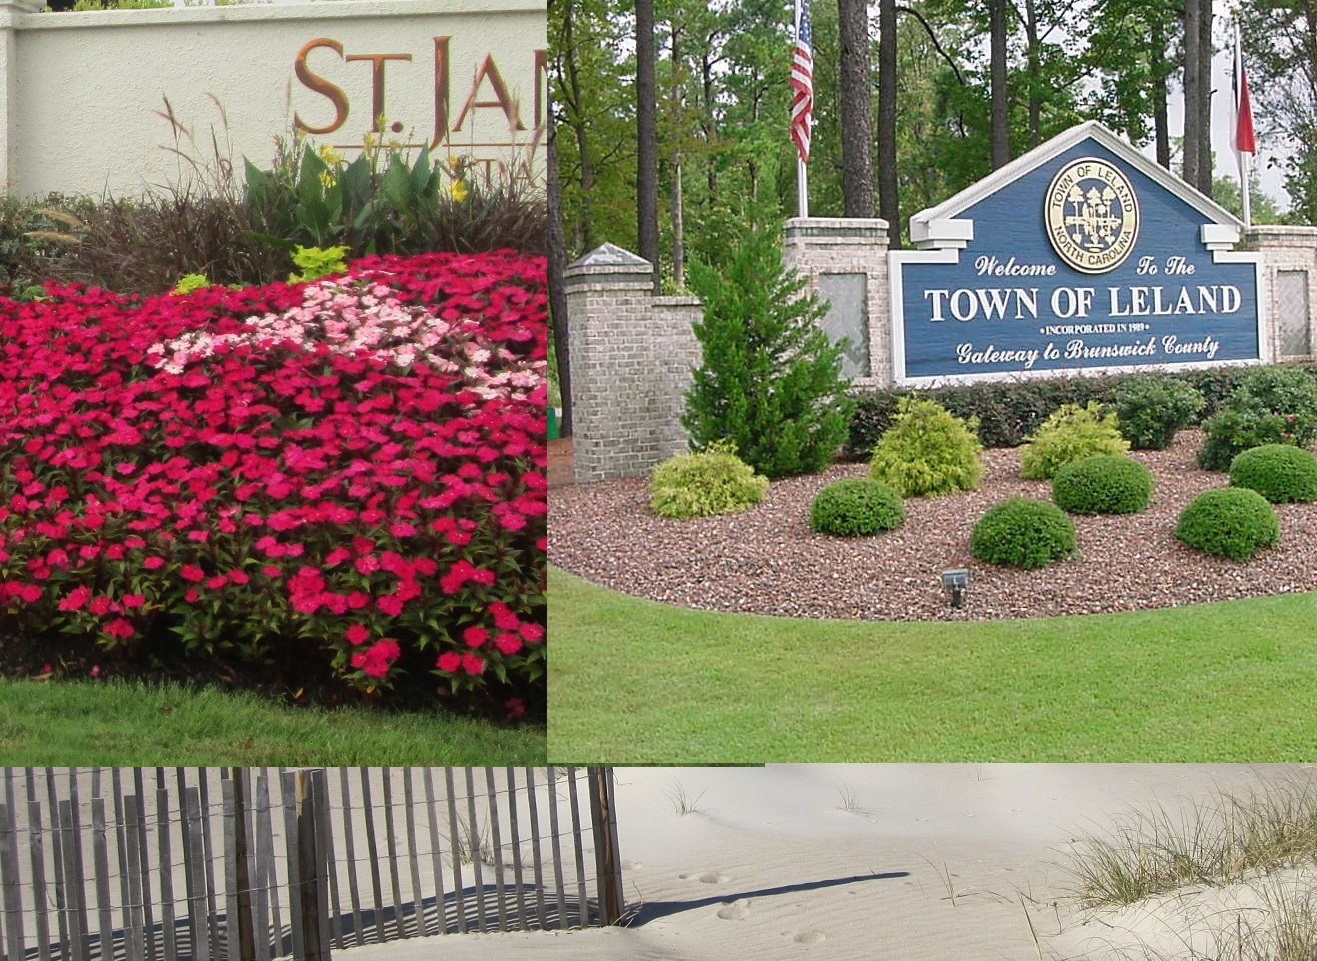 North Carolina towns communities photos